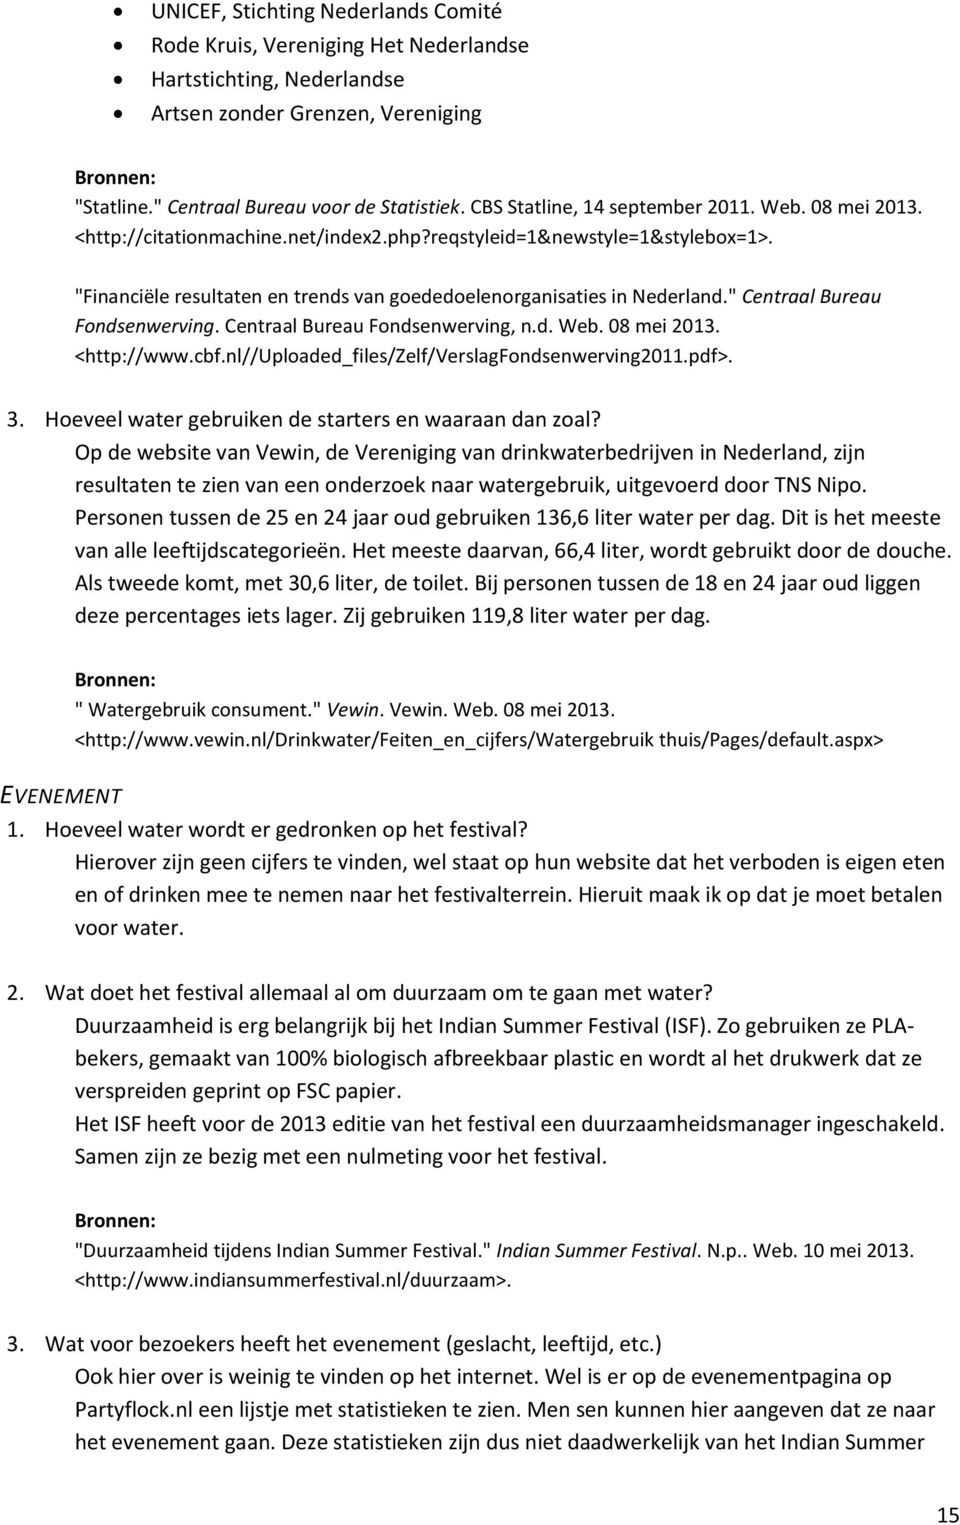 "Financiële resultaten en trends van goededoelenorganisaties in Nederland." Centraal Bureau Fondsenwerving. Centraal Bureau Fondsenwerving, n.d. Web. 08 mei 2013. <http://www.cbf.